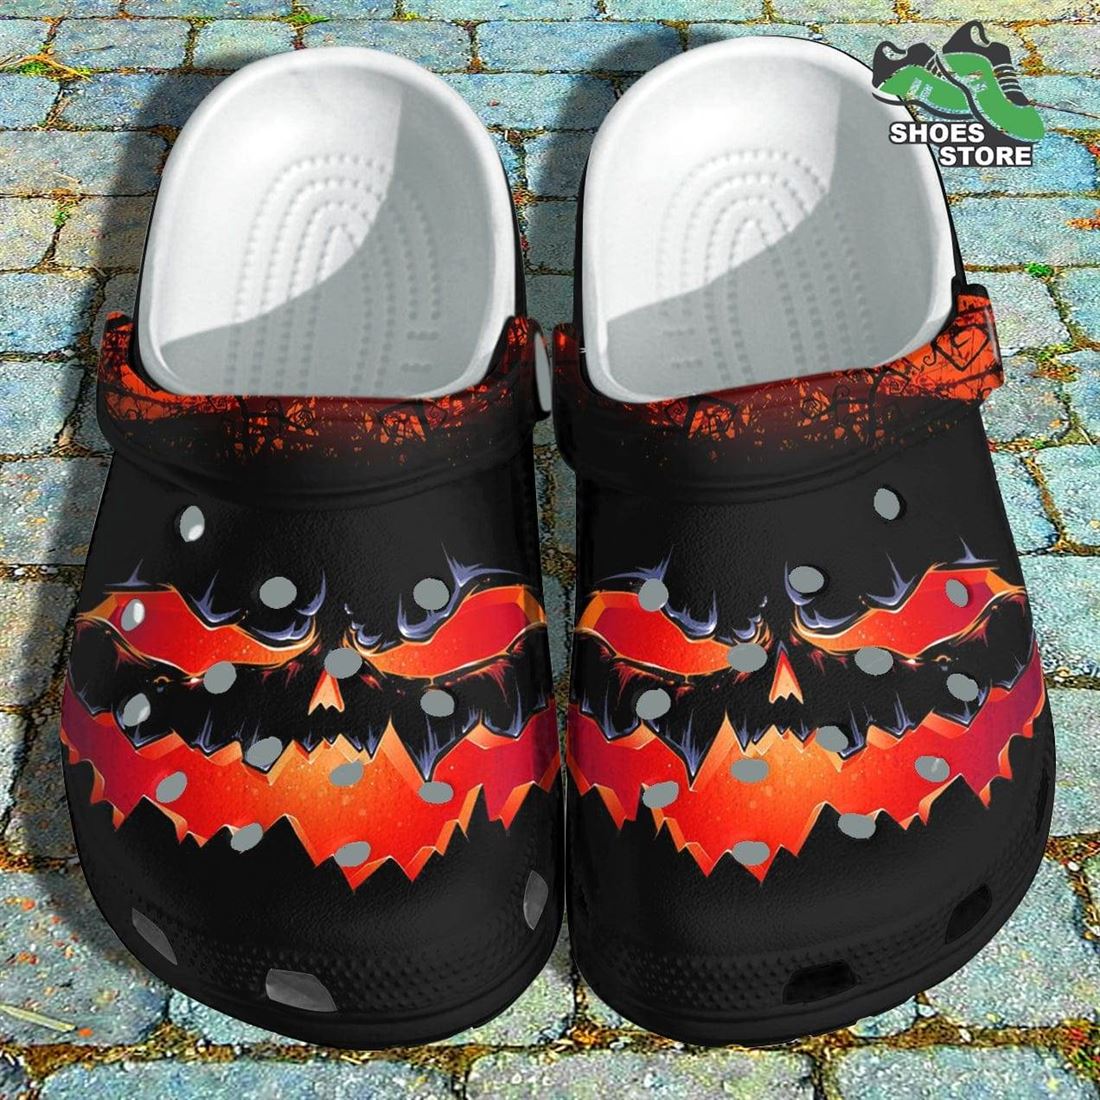 Evil Pumpkin Smile Crocs Shoes, Devil Laugh Crocs Shoes Gifts Son Birthday